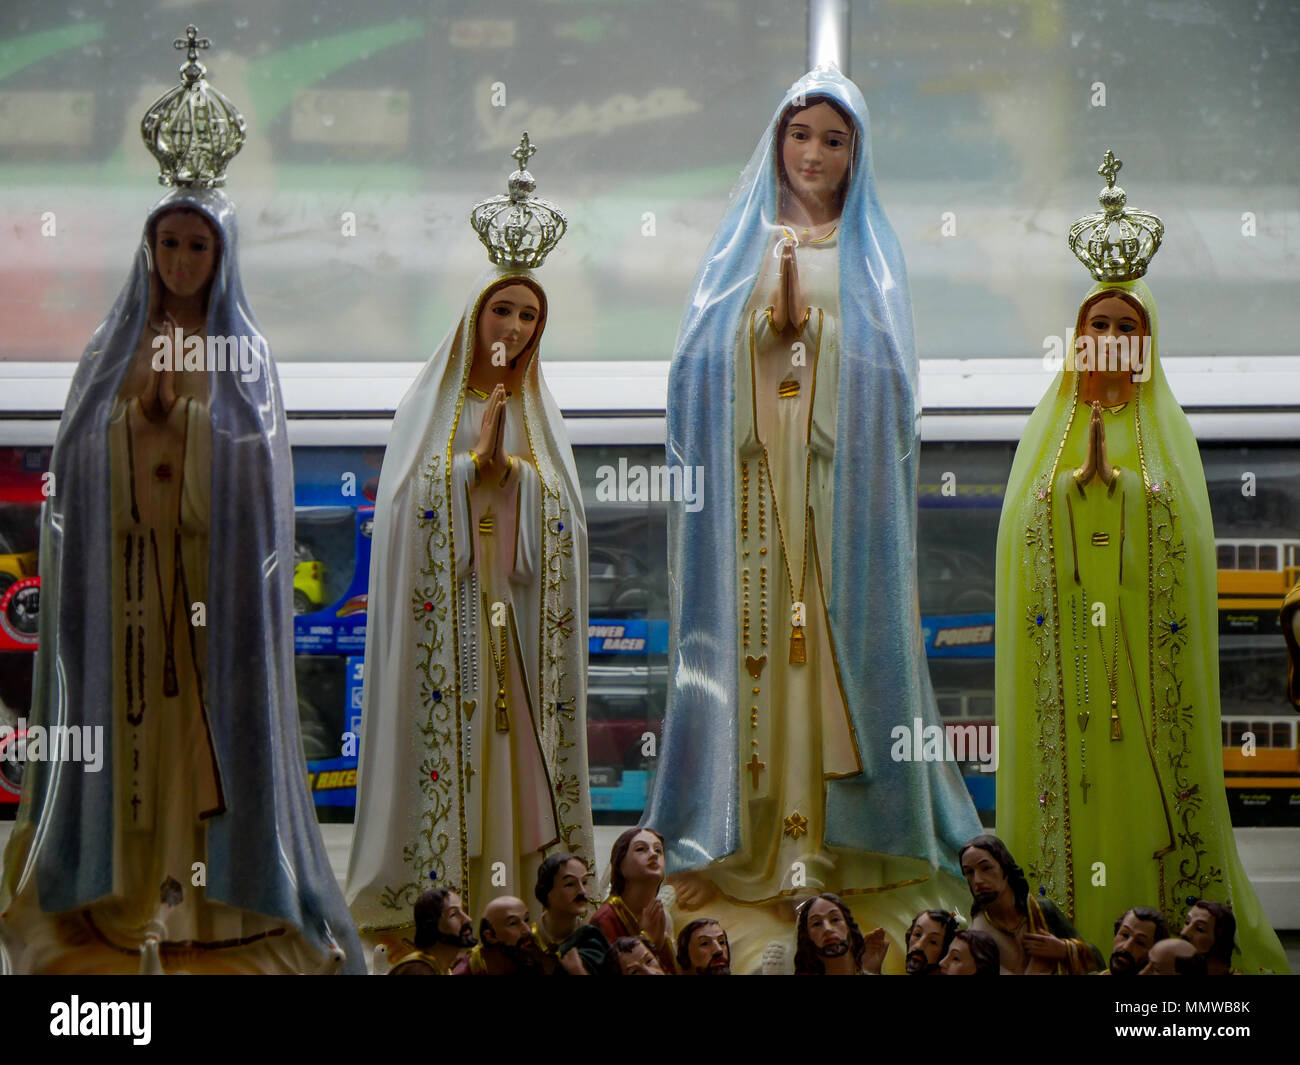 Statuen der Heiligen Jungfrau in einem Schaufenster der Alfama, Lissabon, Portugal Stockfoto